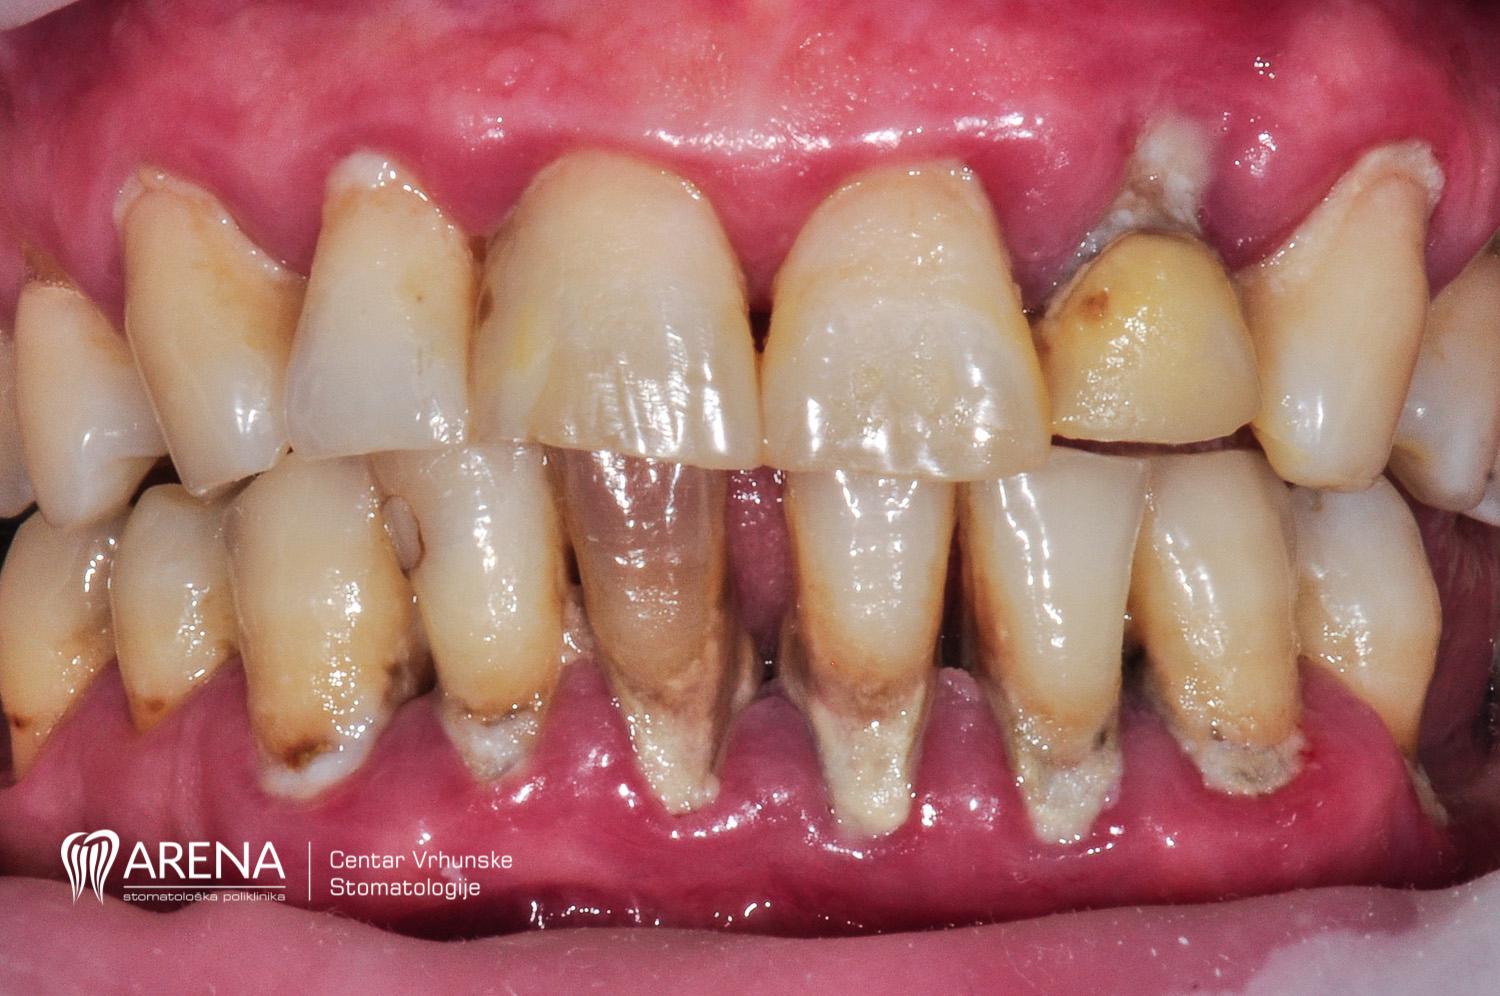 Stanje pacijentovih zuba prije zahvata u poliklinici ARENA.